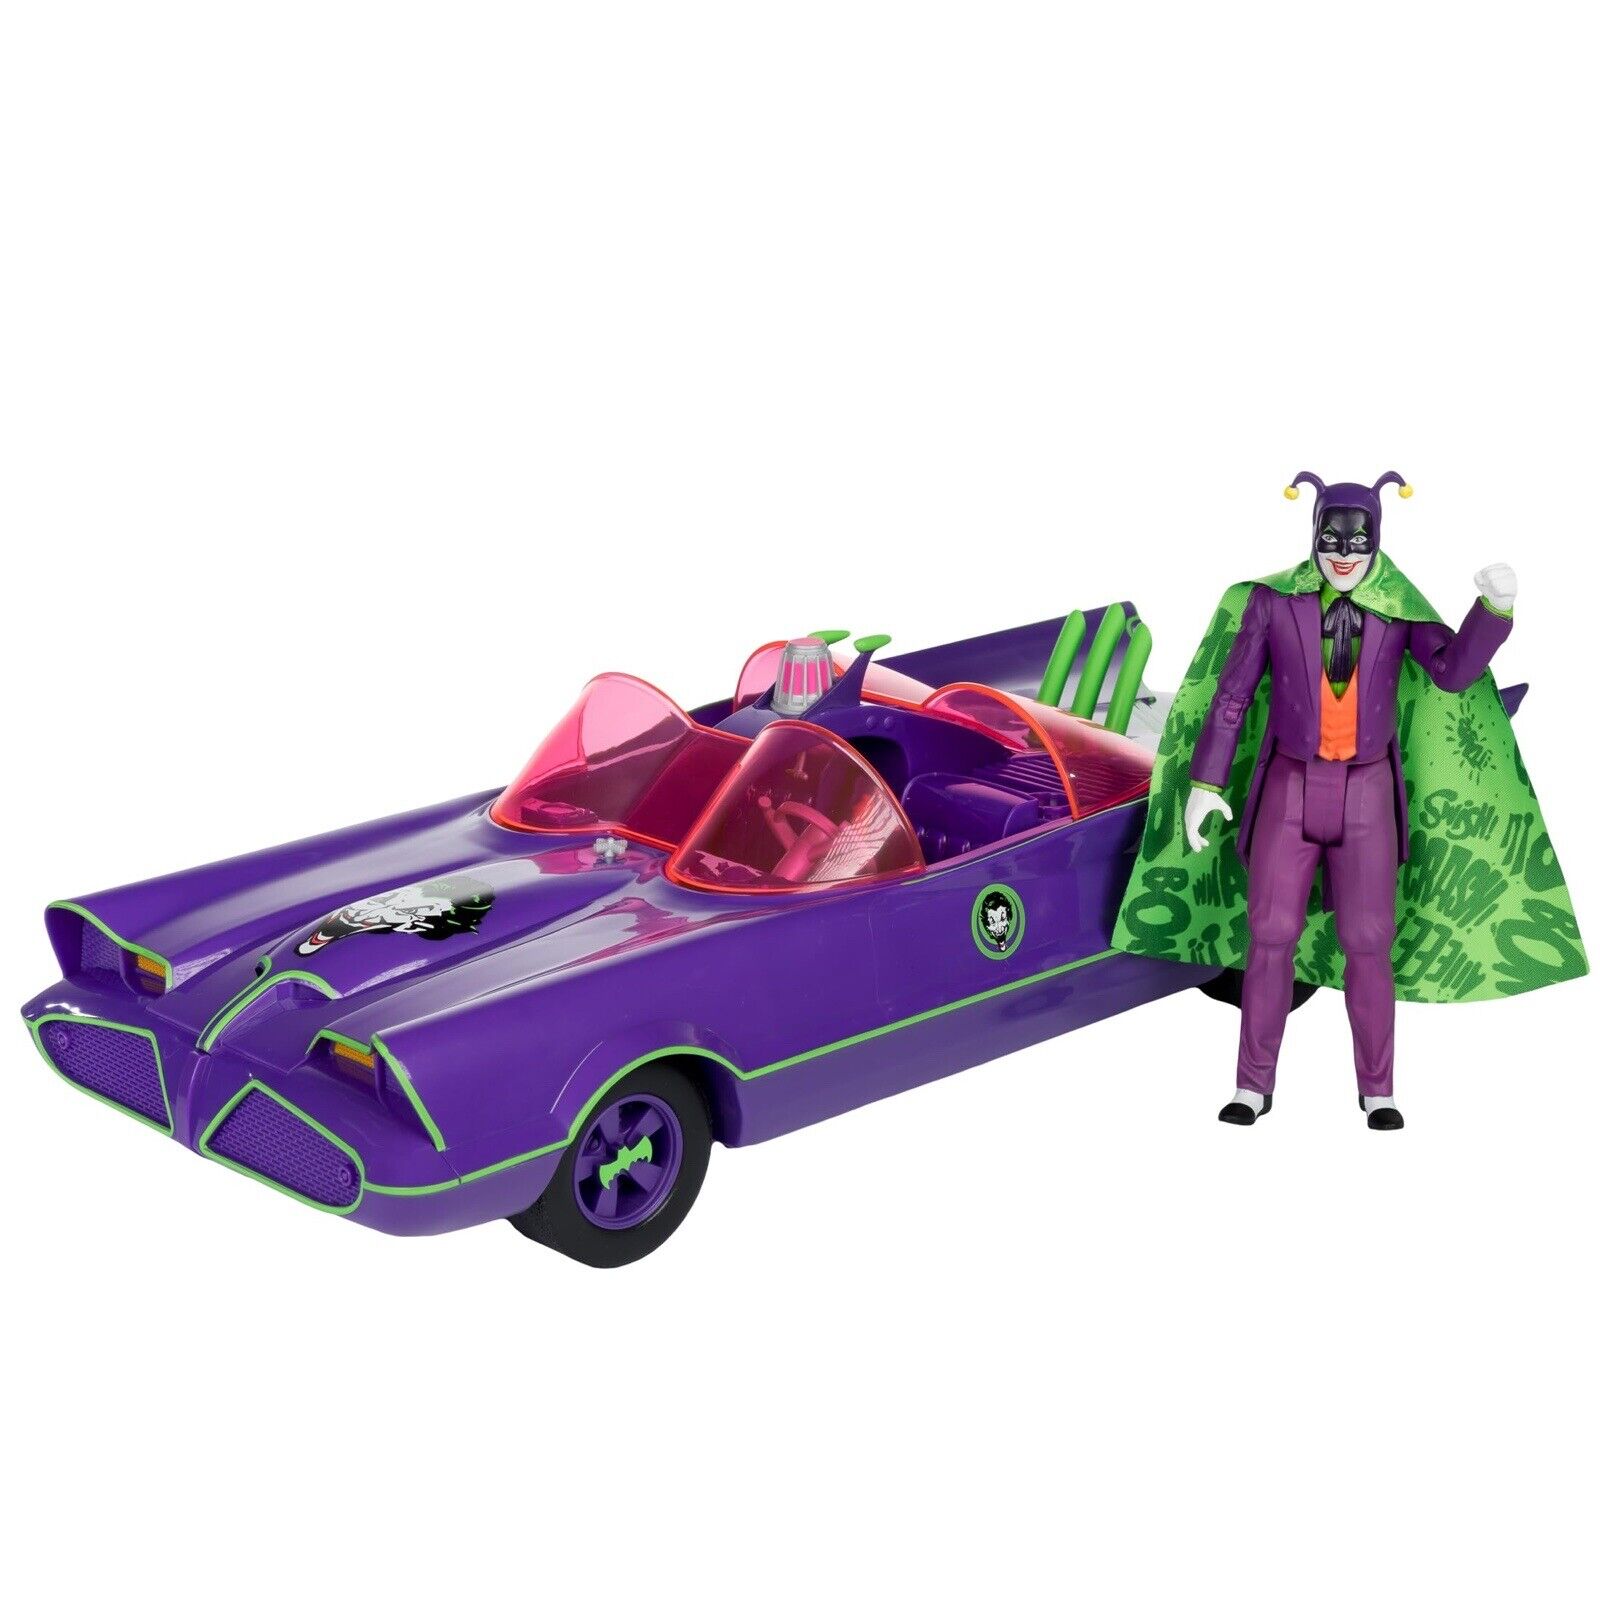 PRE SALE - DC Retro 6IN - Batman 66 - Batmobile with Joker Figure Gold Label